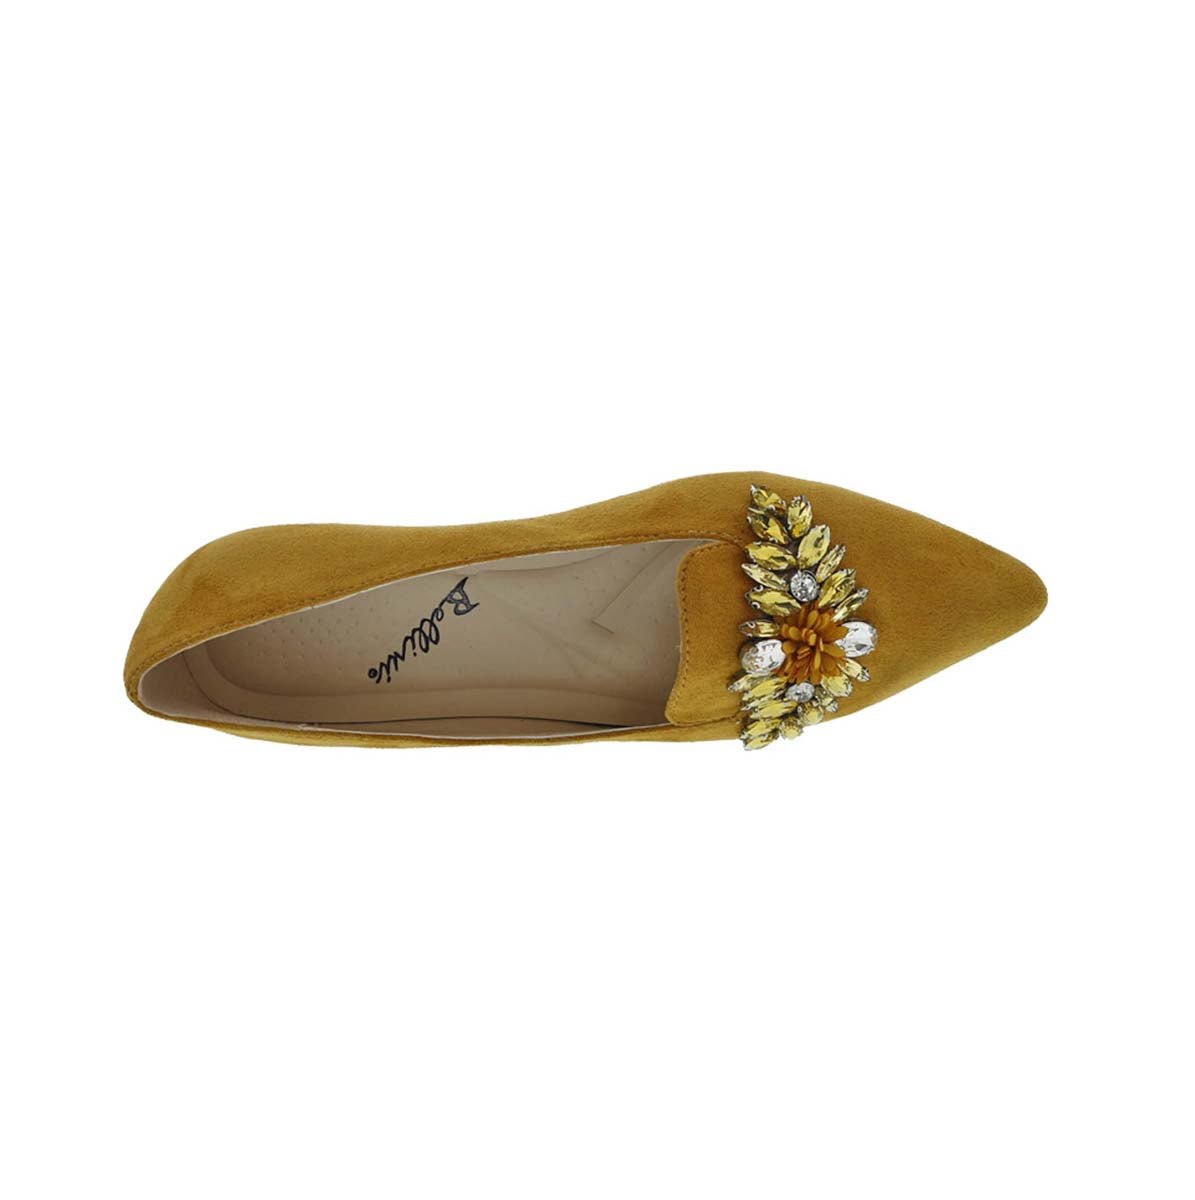 BELLINI FABULOUS II WOMEN SLIP-ON SHOES IN MUSTARD MICROSUEDE - TLW Shoes